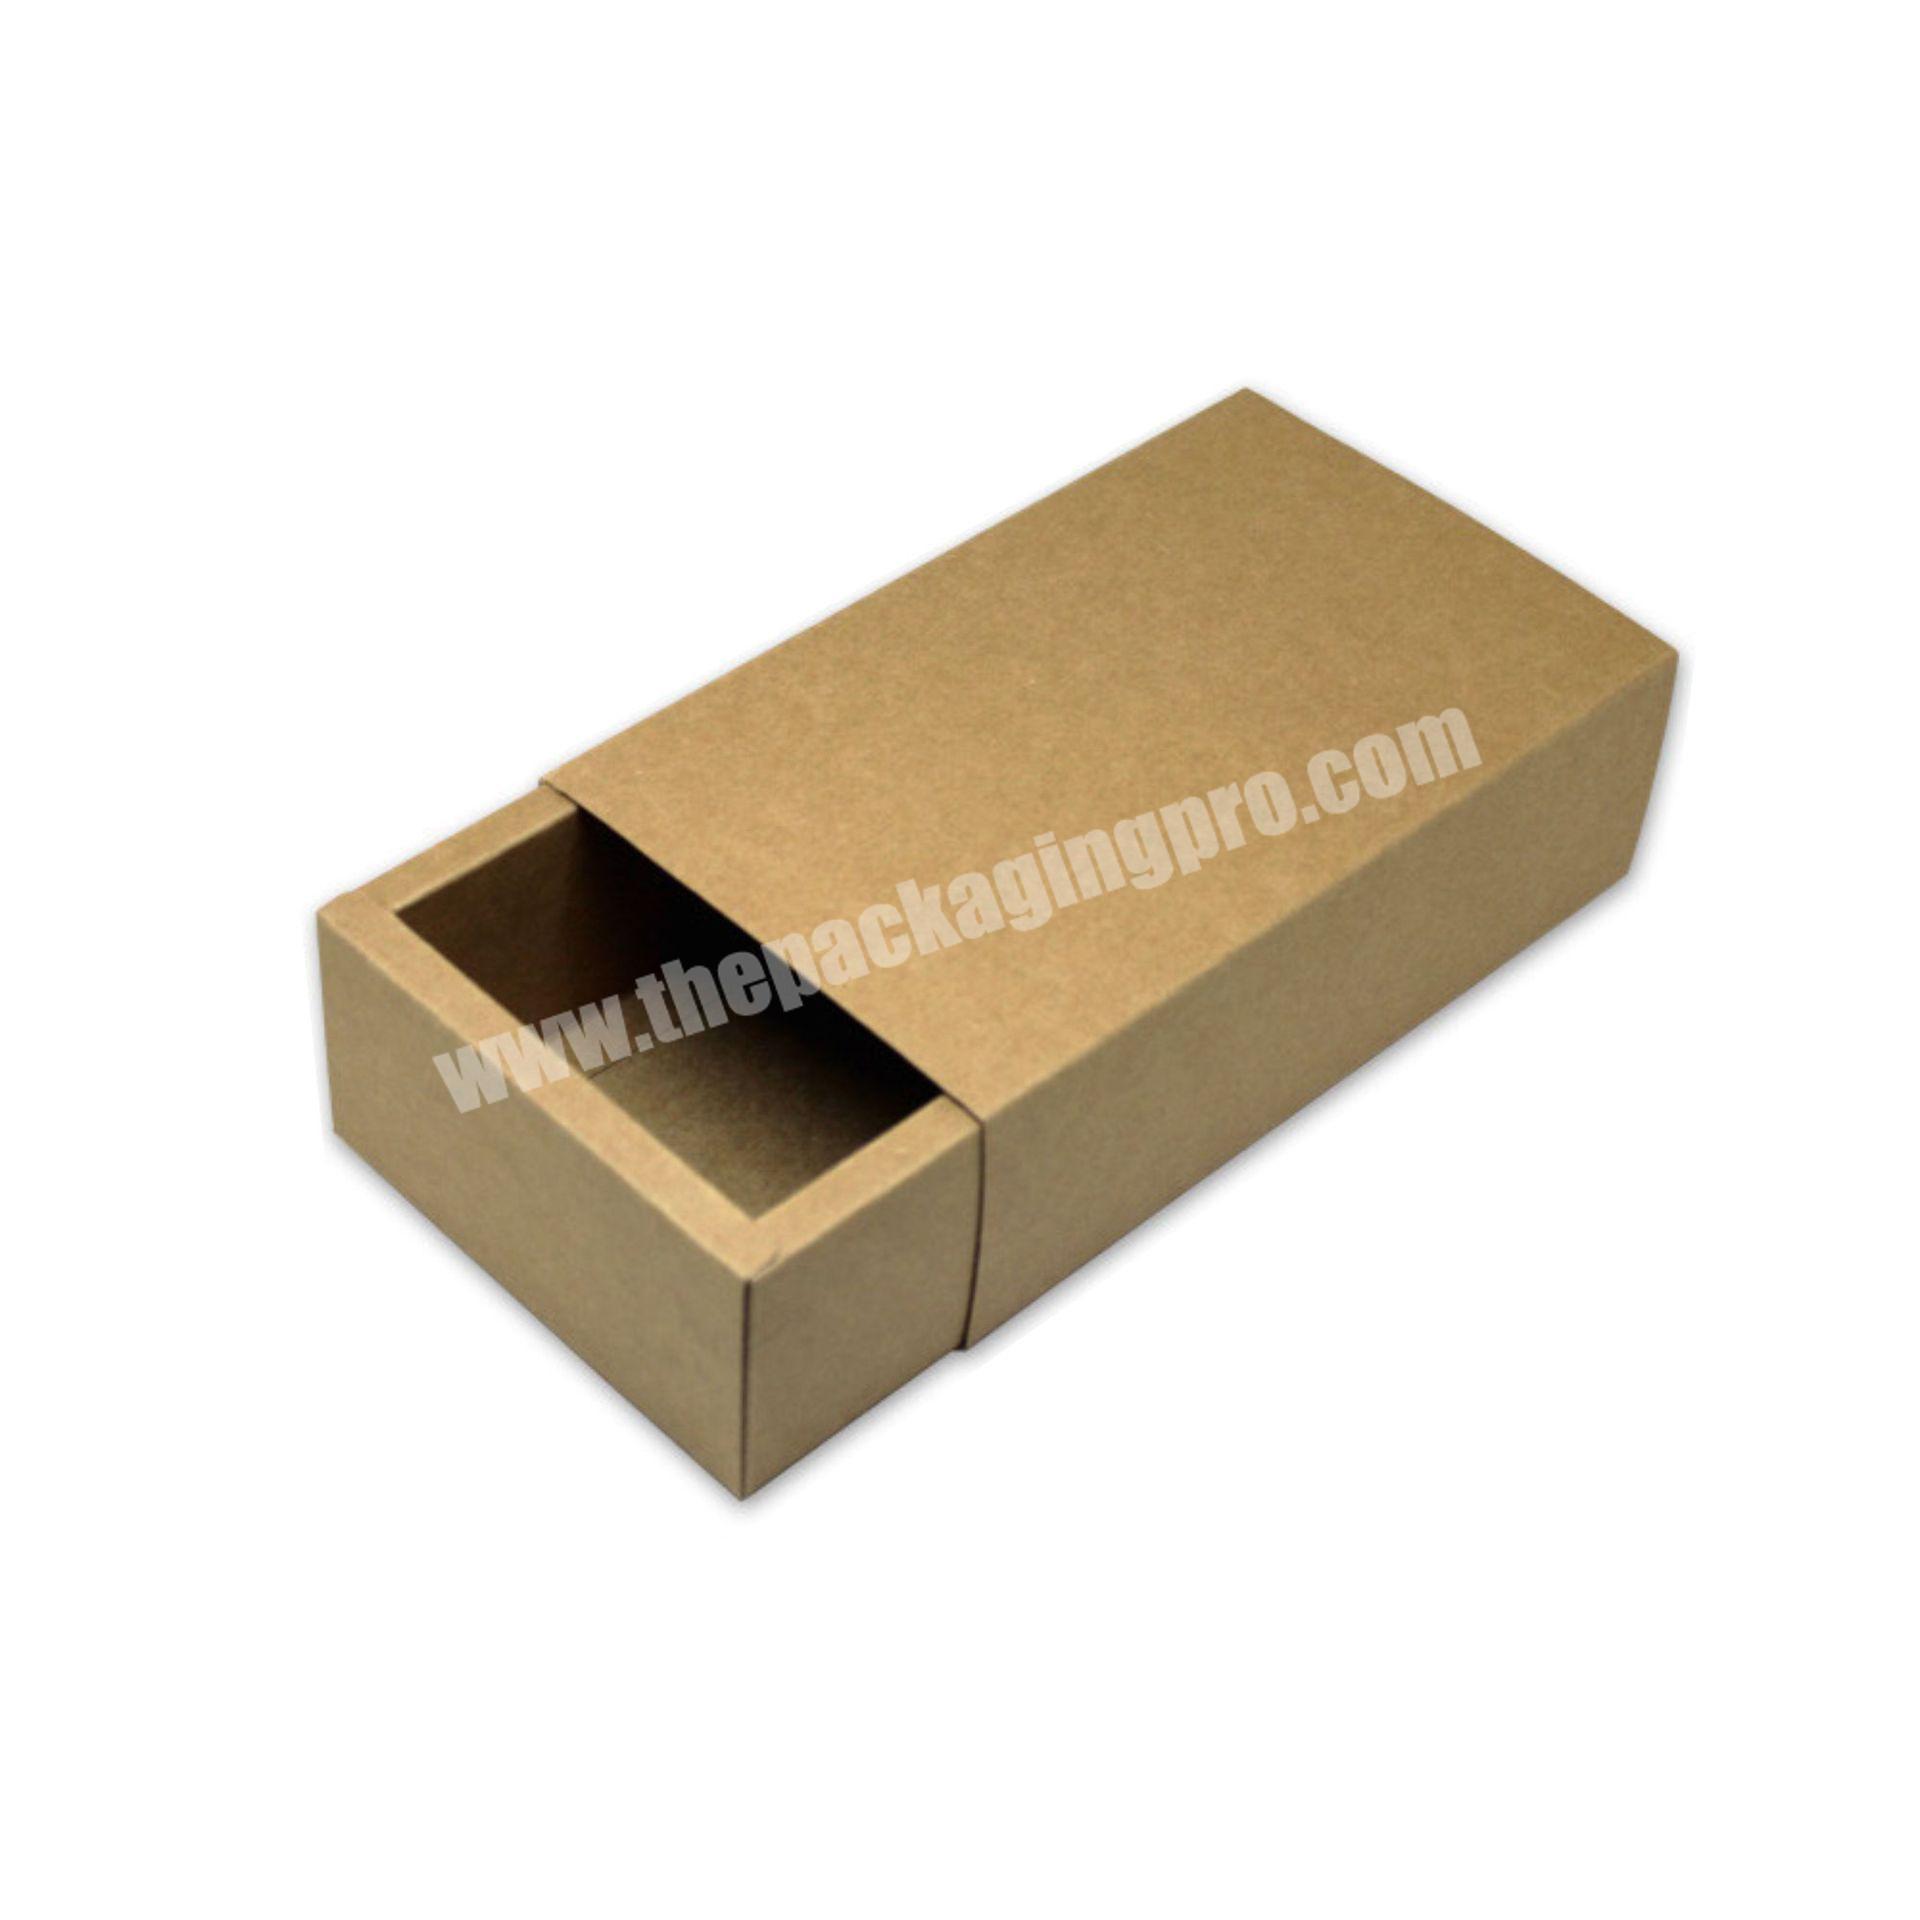 Wholesale price kraft paper box kraft paper packaging box kraft paper drawer boxkraft